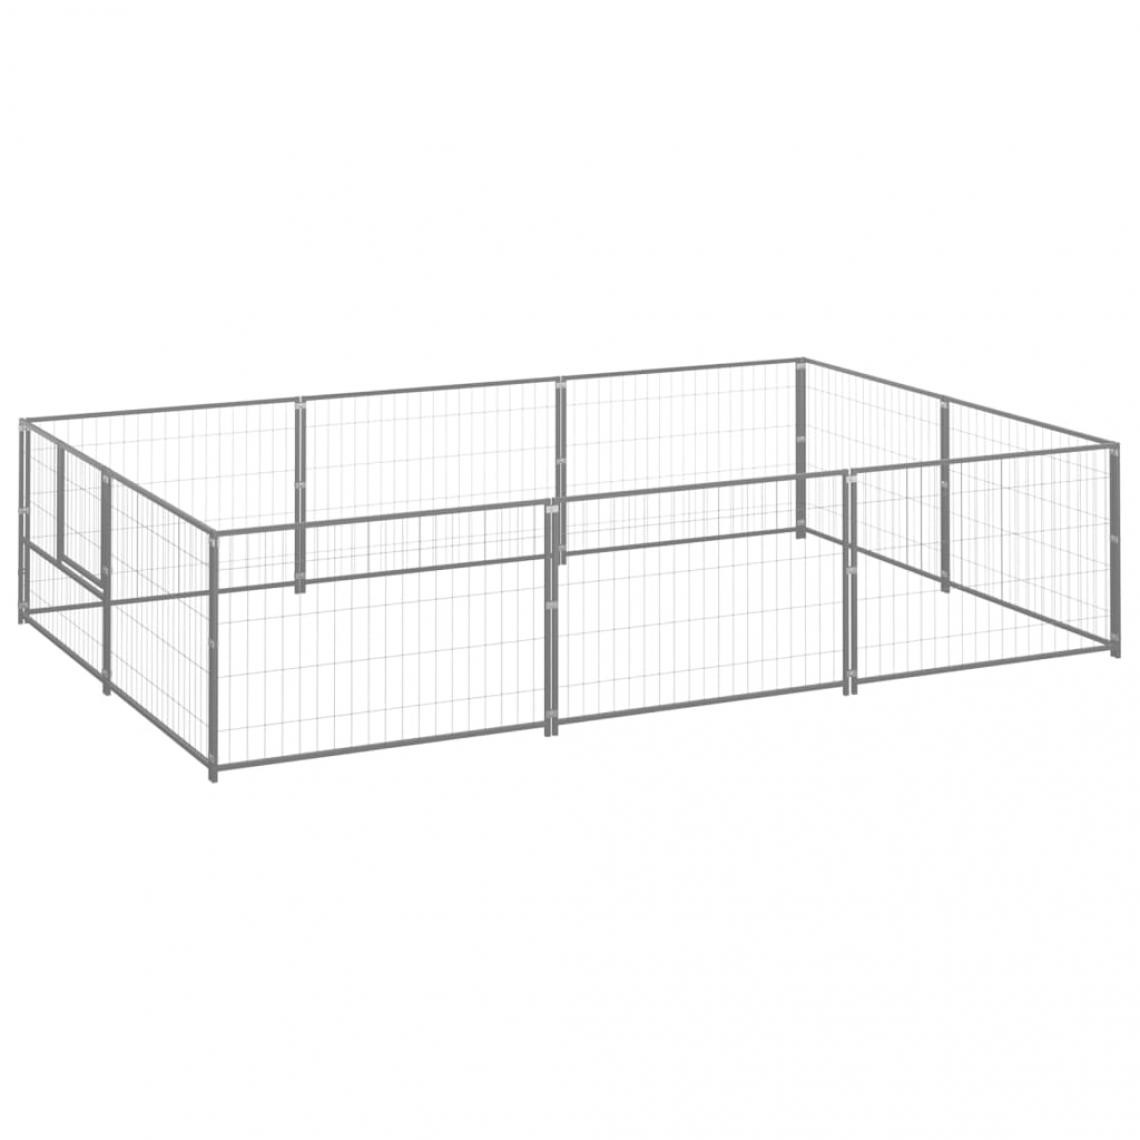 Helloshop26 - Chenil extérieur cage enclos parc animaux chien argenté 6 m² acier 02_0000290 - Clôture pour chien